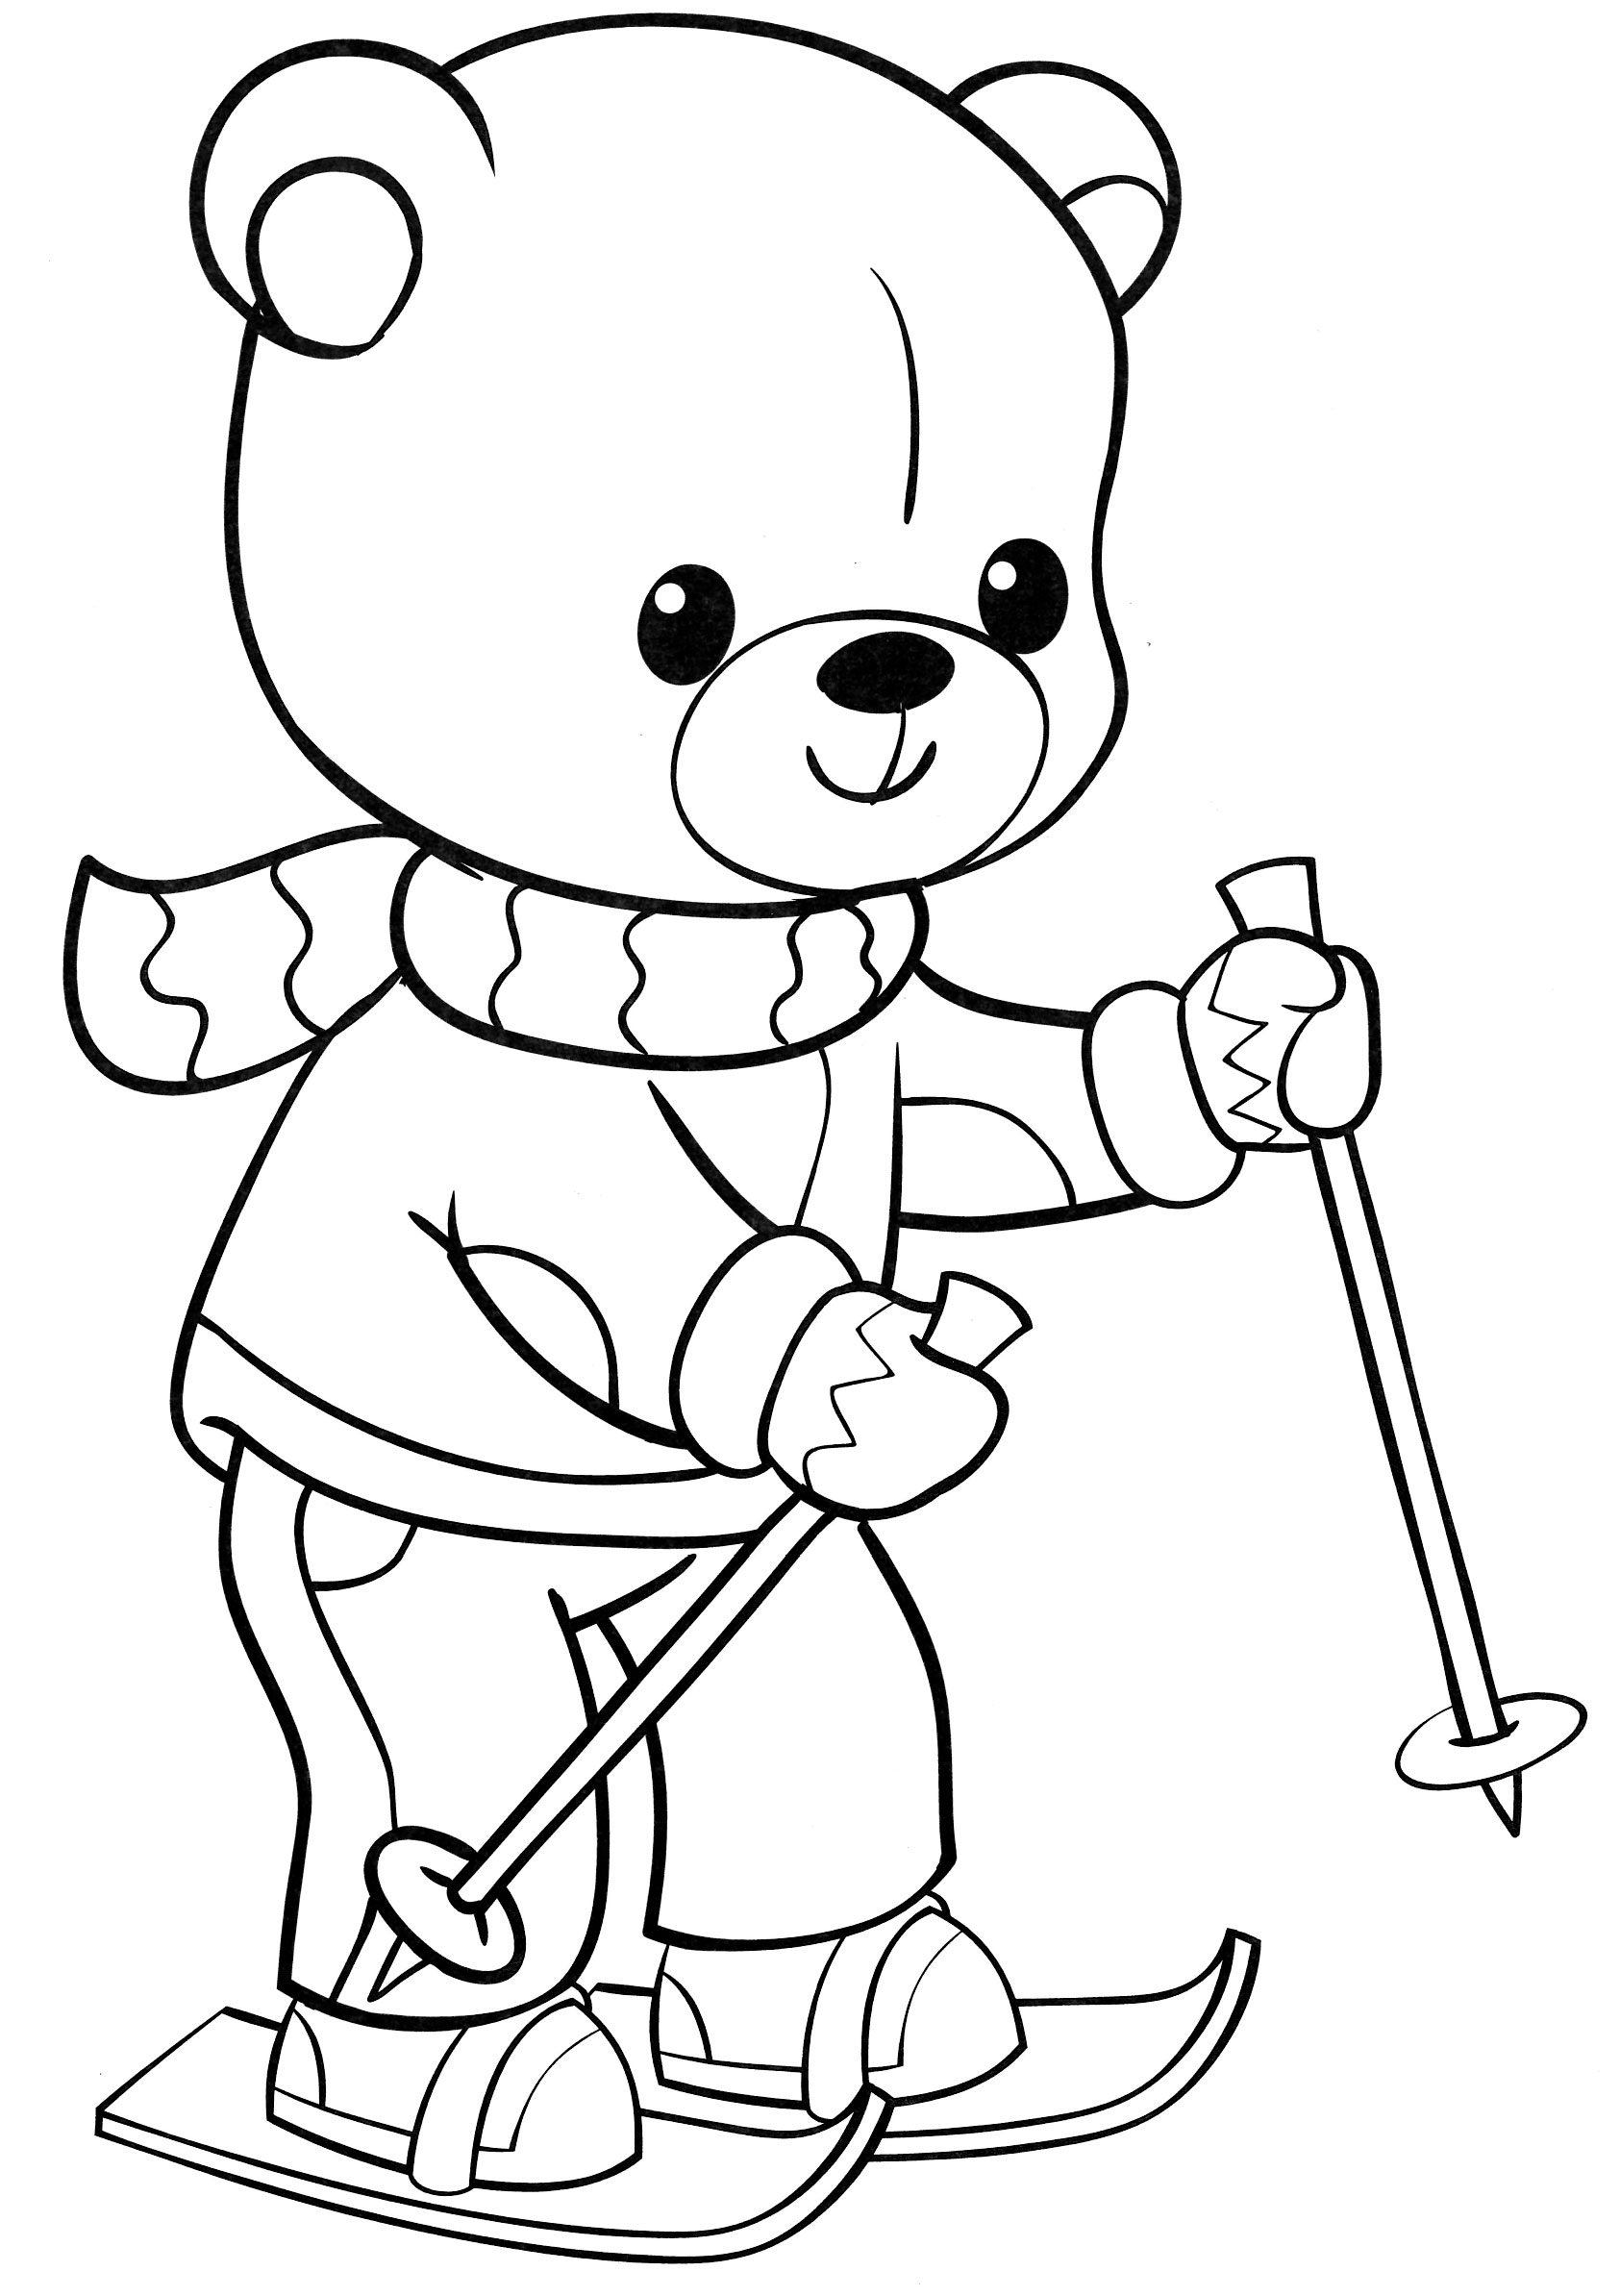 Teddy bear on skis #1